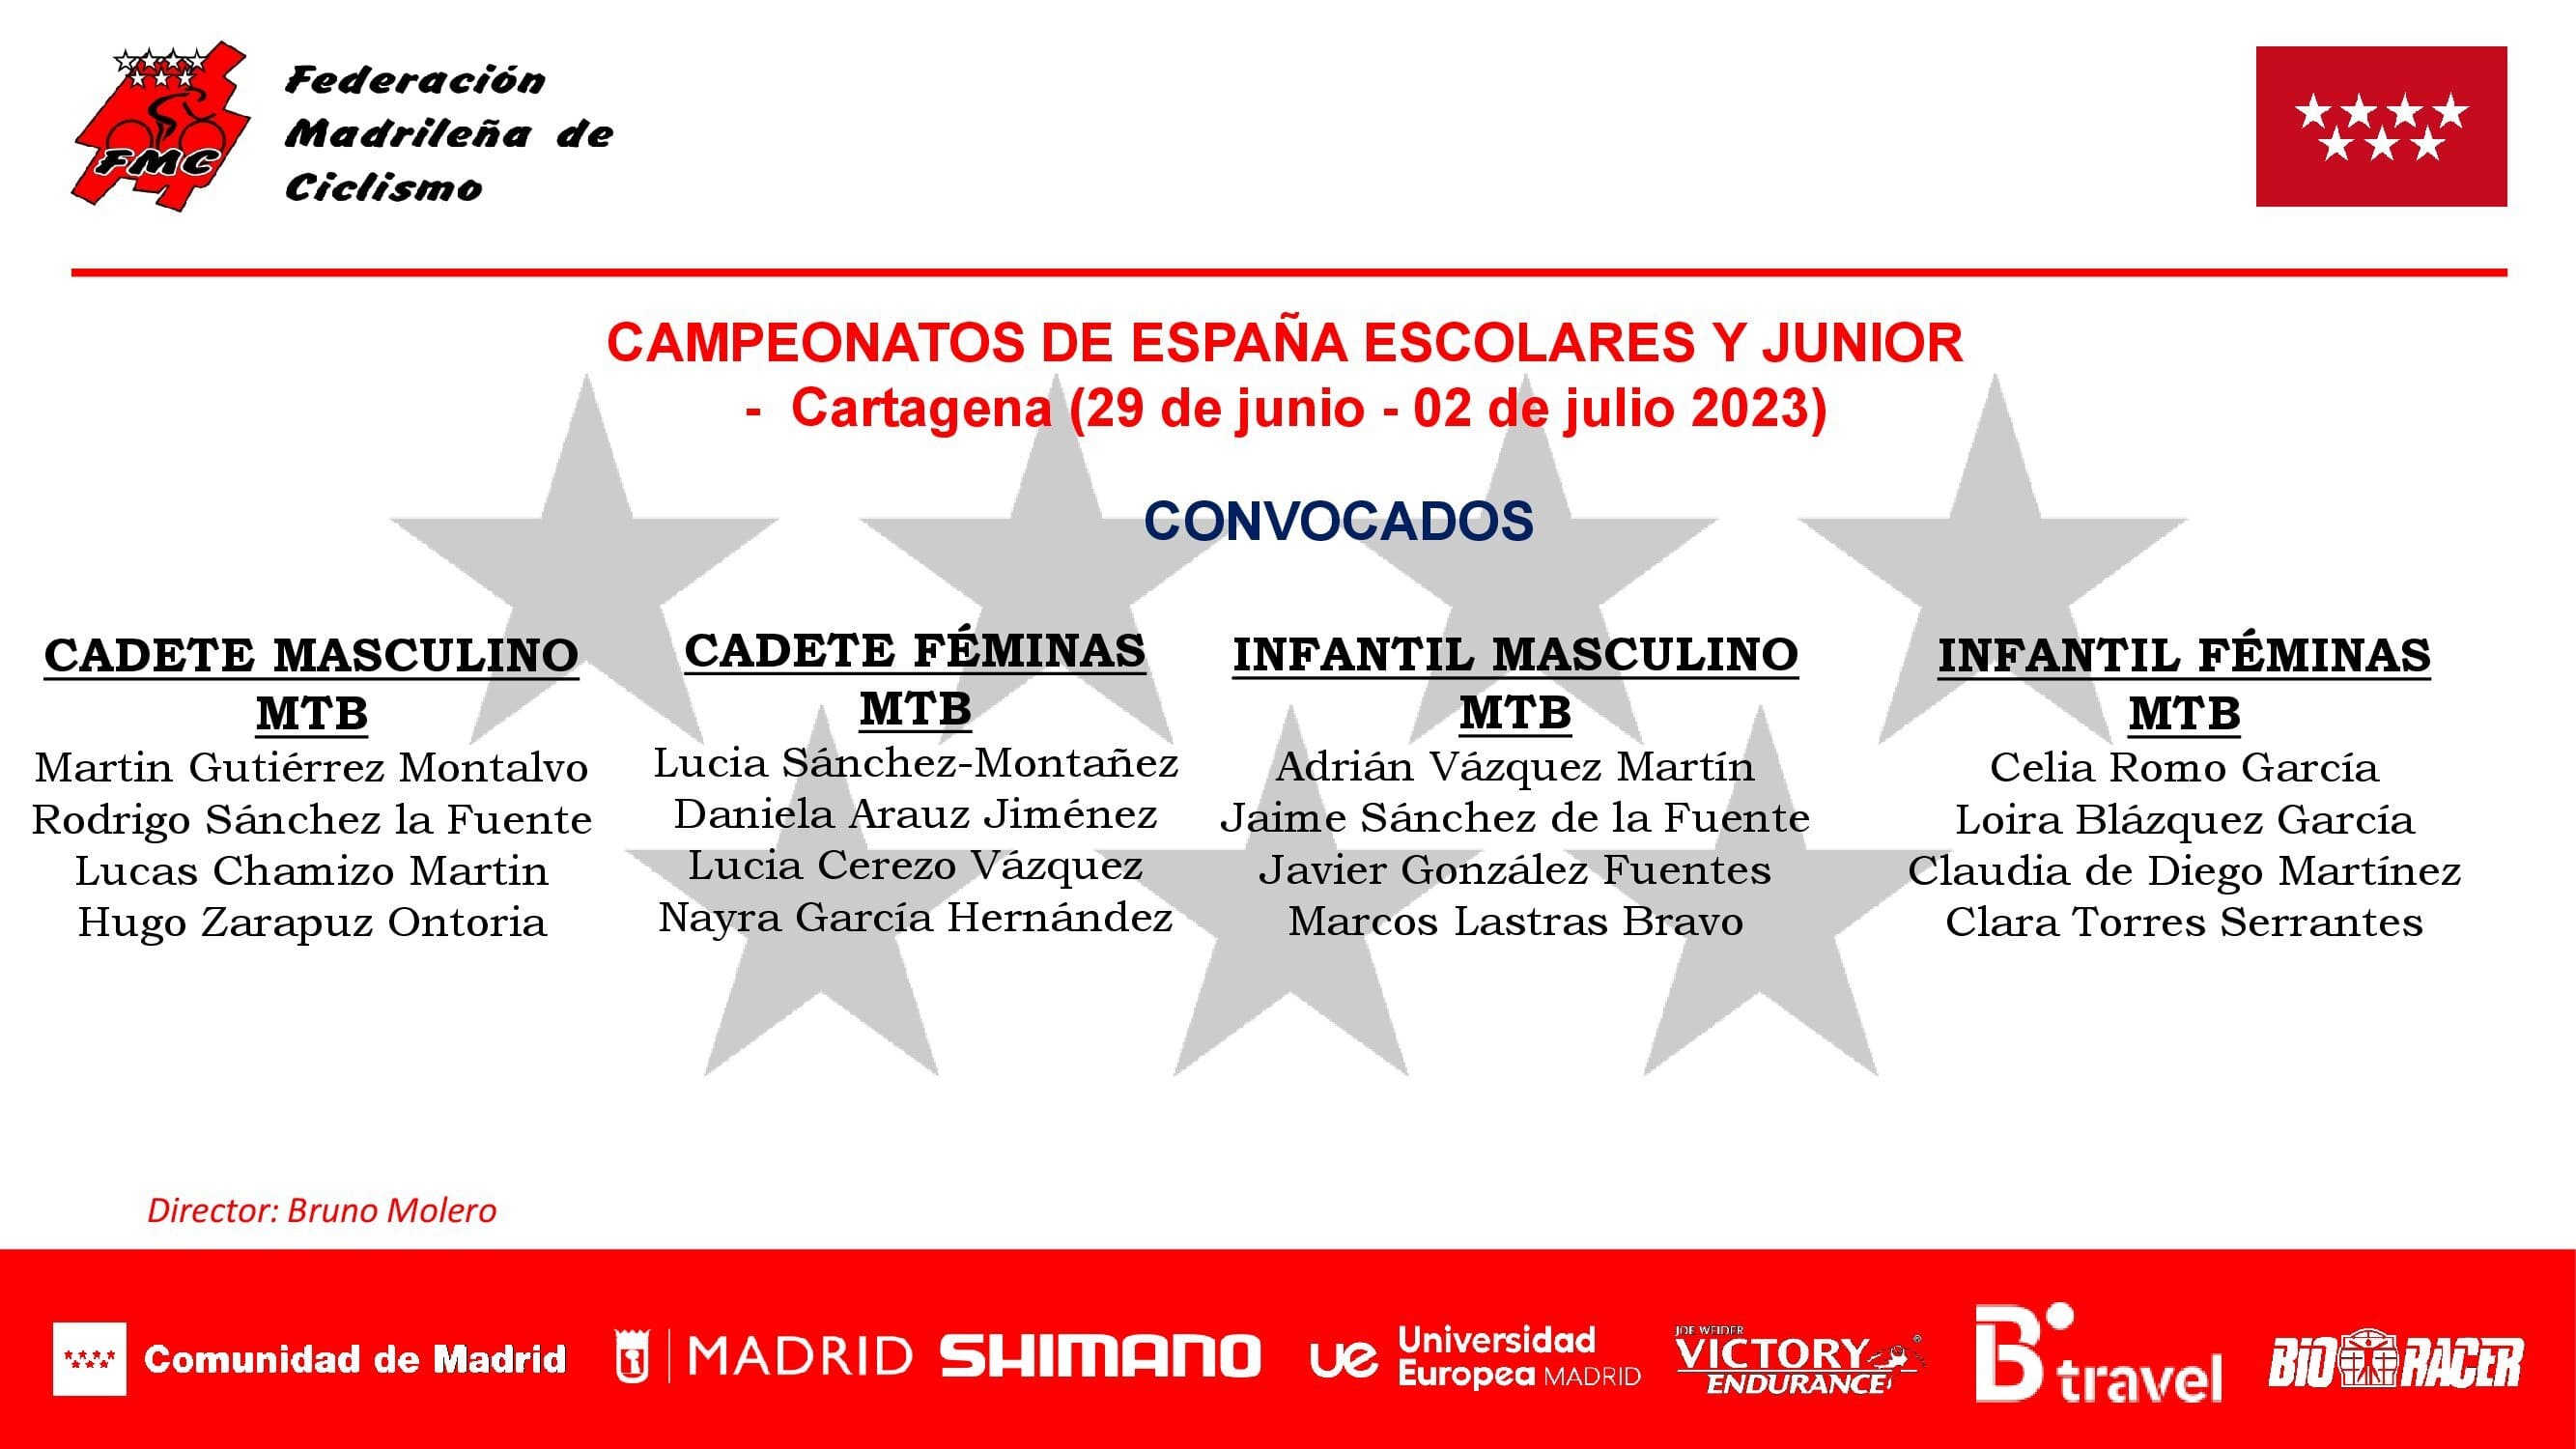 Gran expectación para los Campeonatos de España Escolares y Junior 2023 en Cartagena